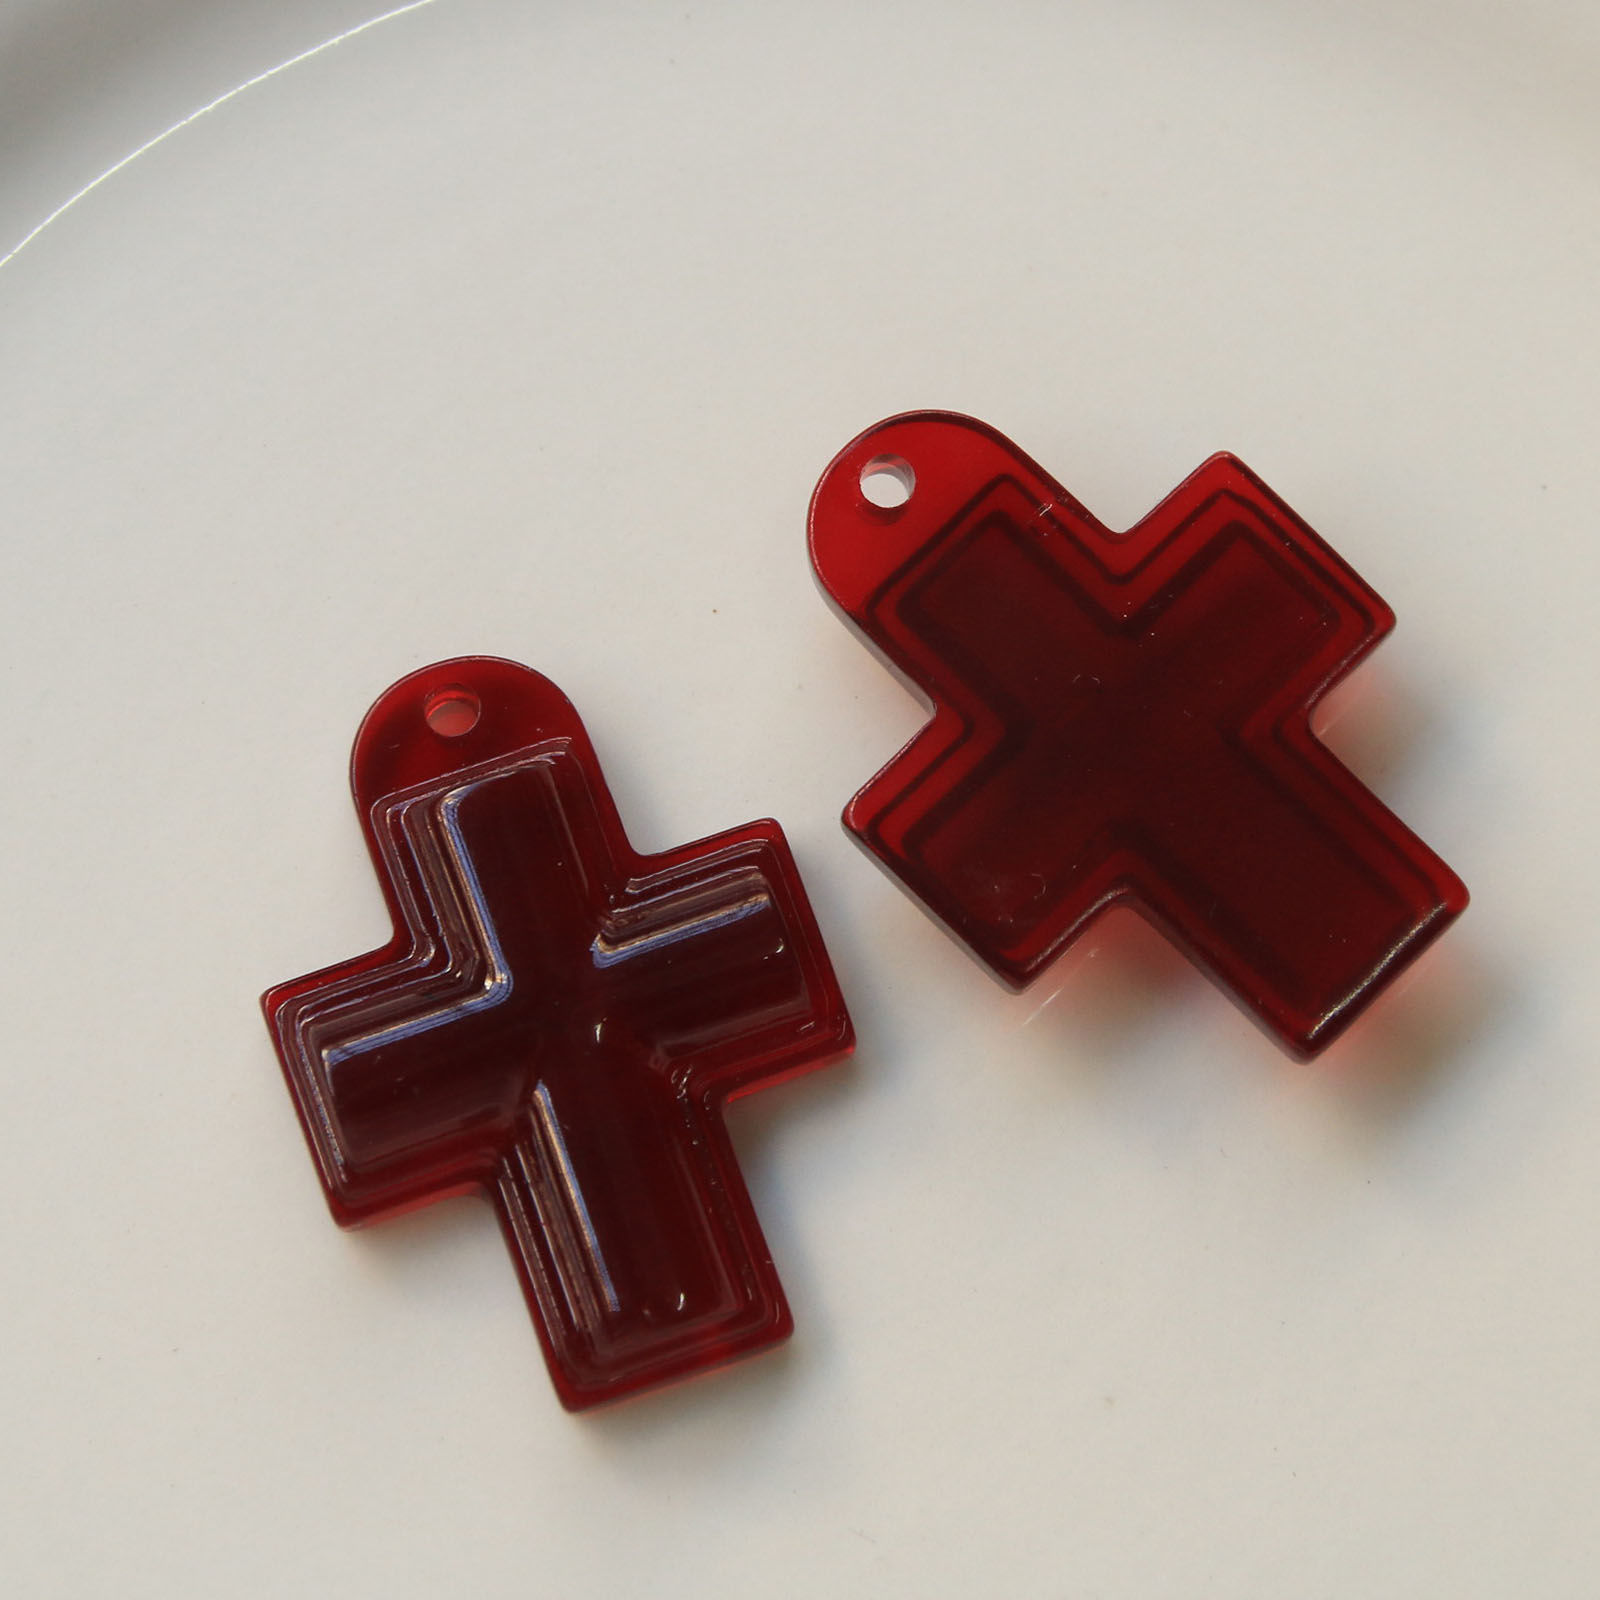 Picture of Acrylic Religious Pendants Cross Red 3.7cm x 2.7cm, 5 PCs